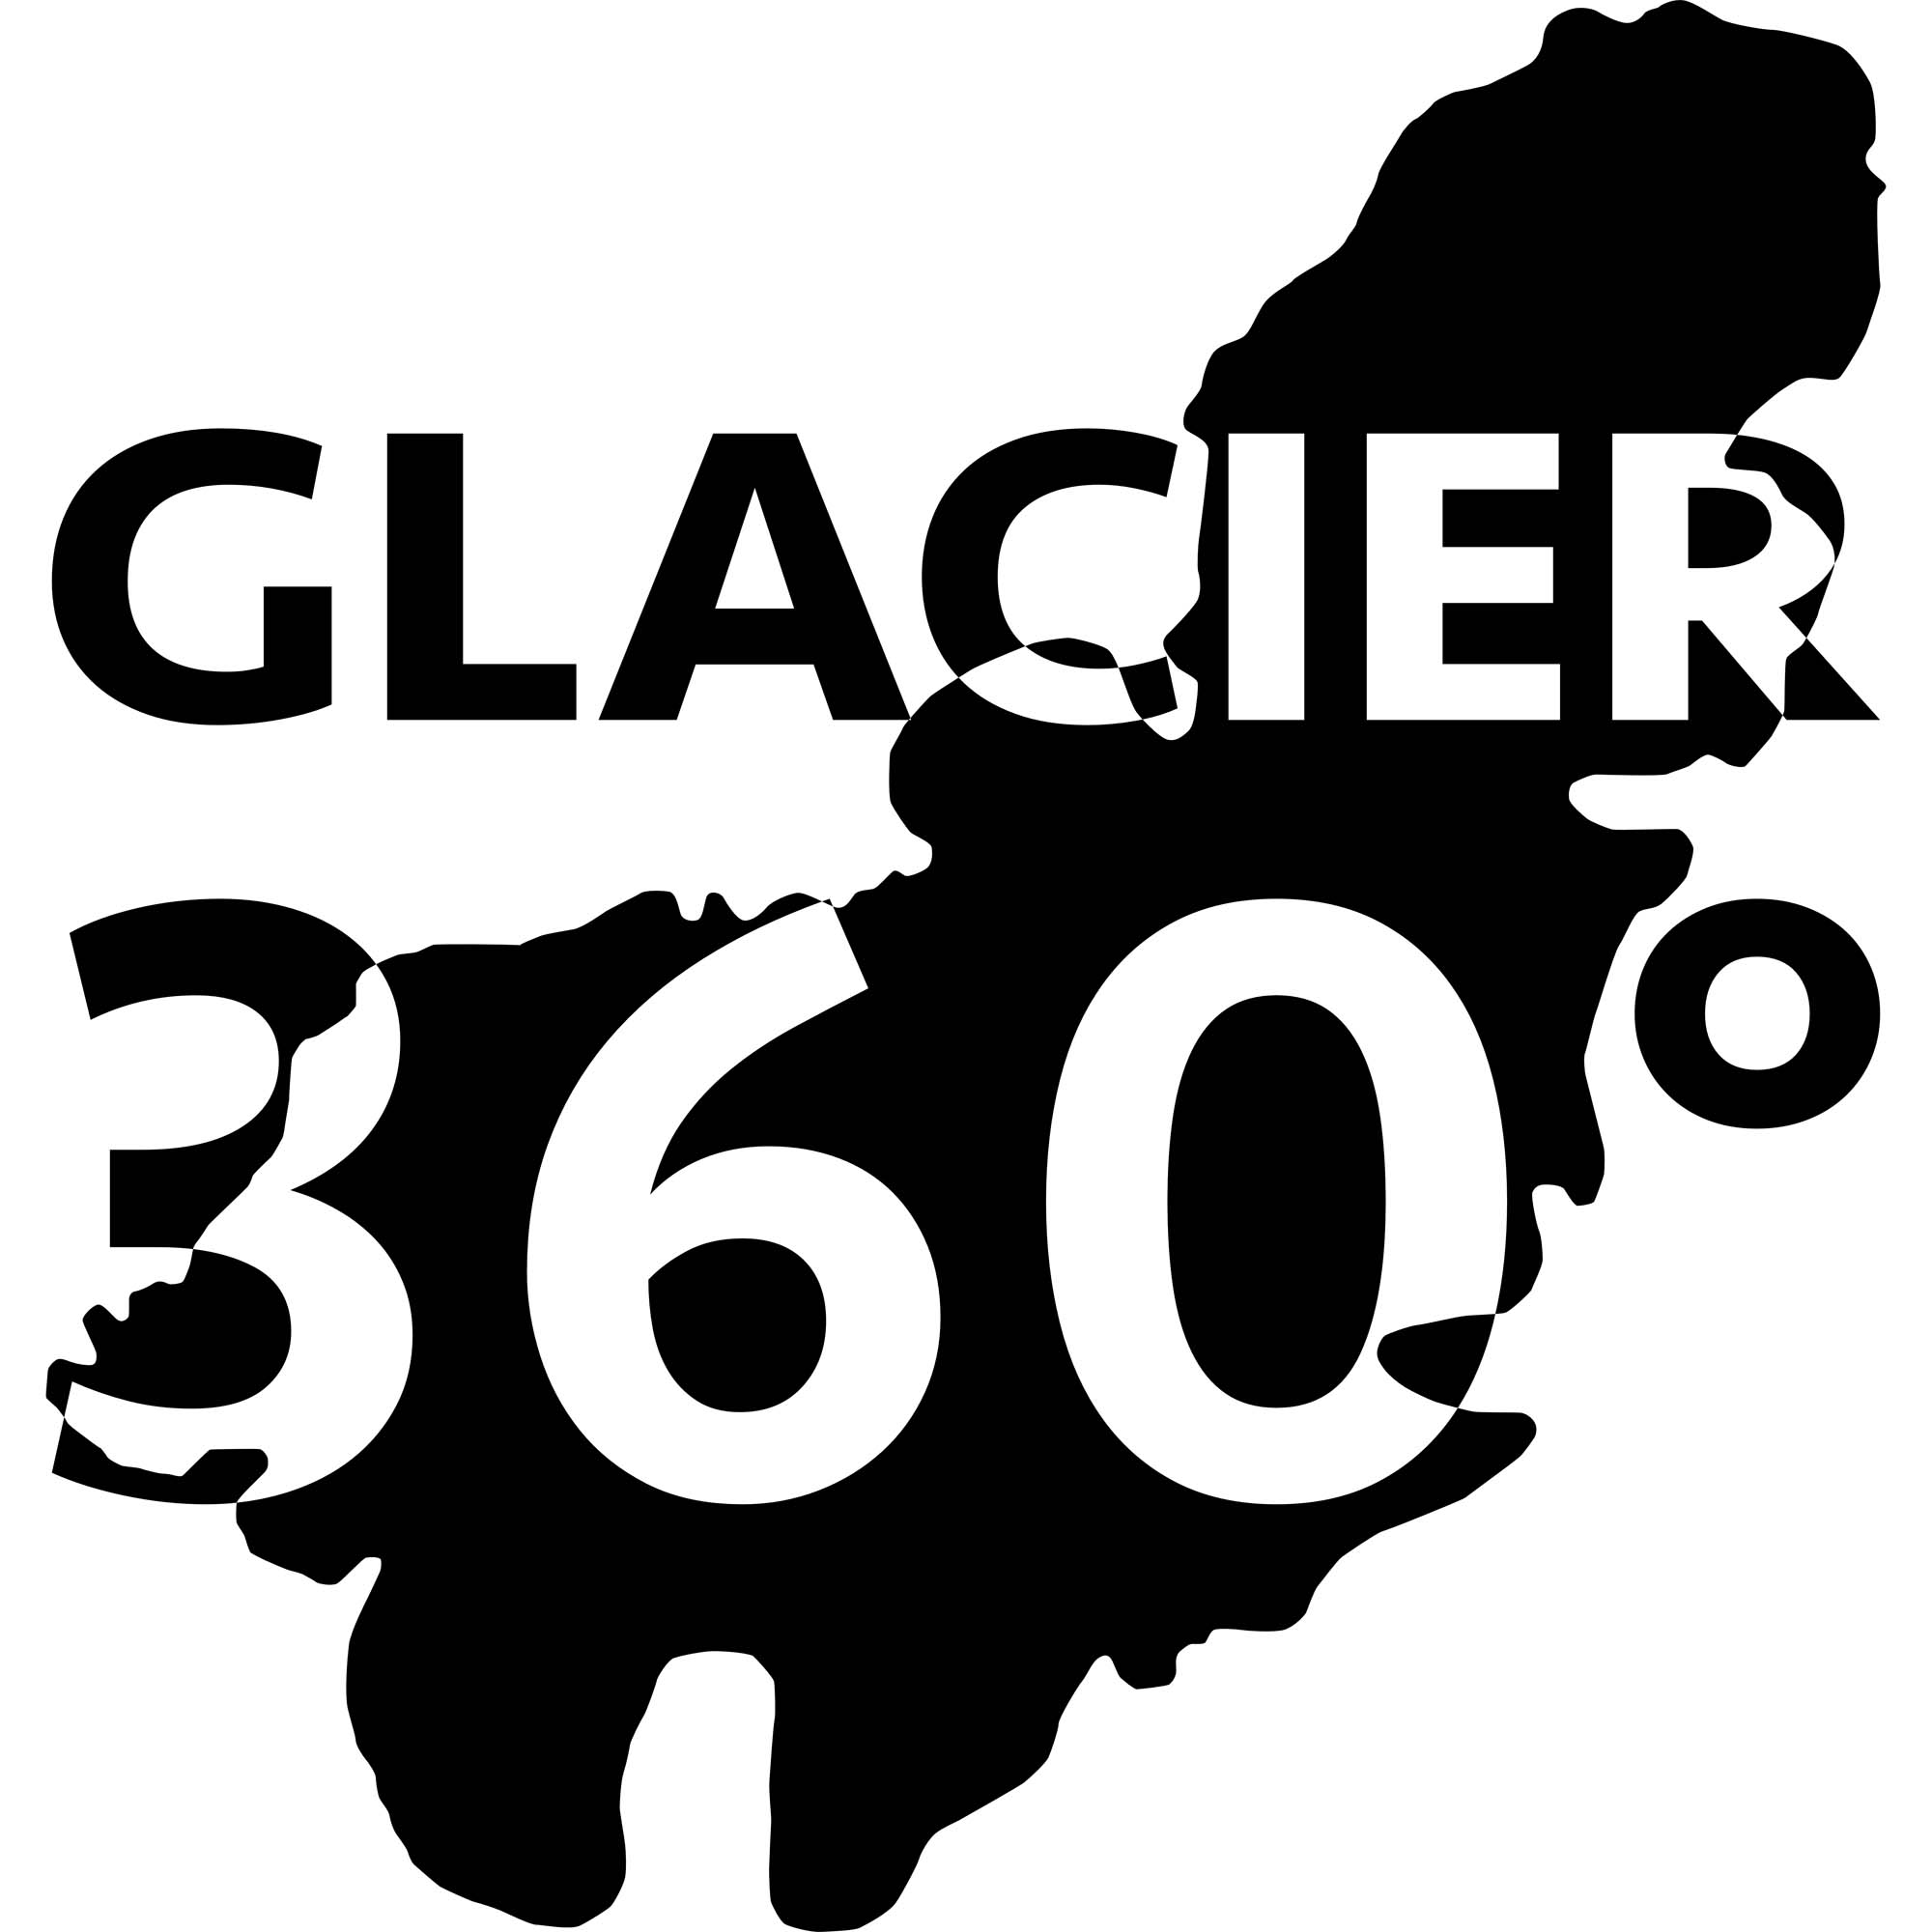 Glacier360 Island